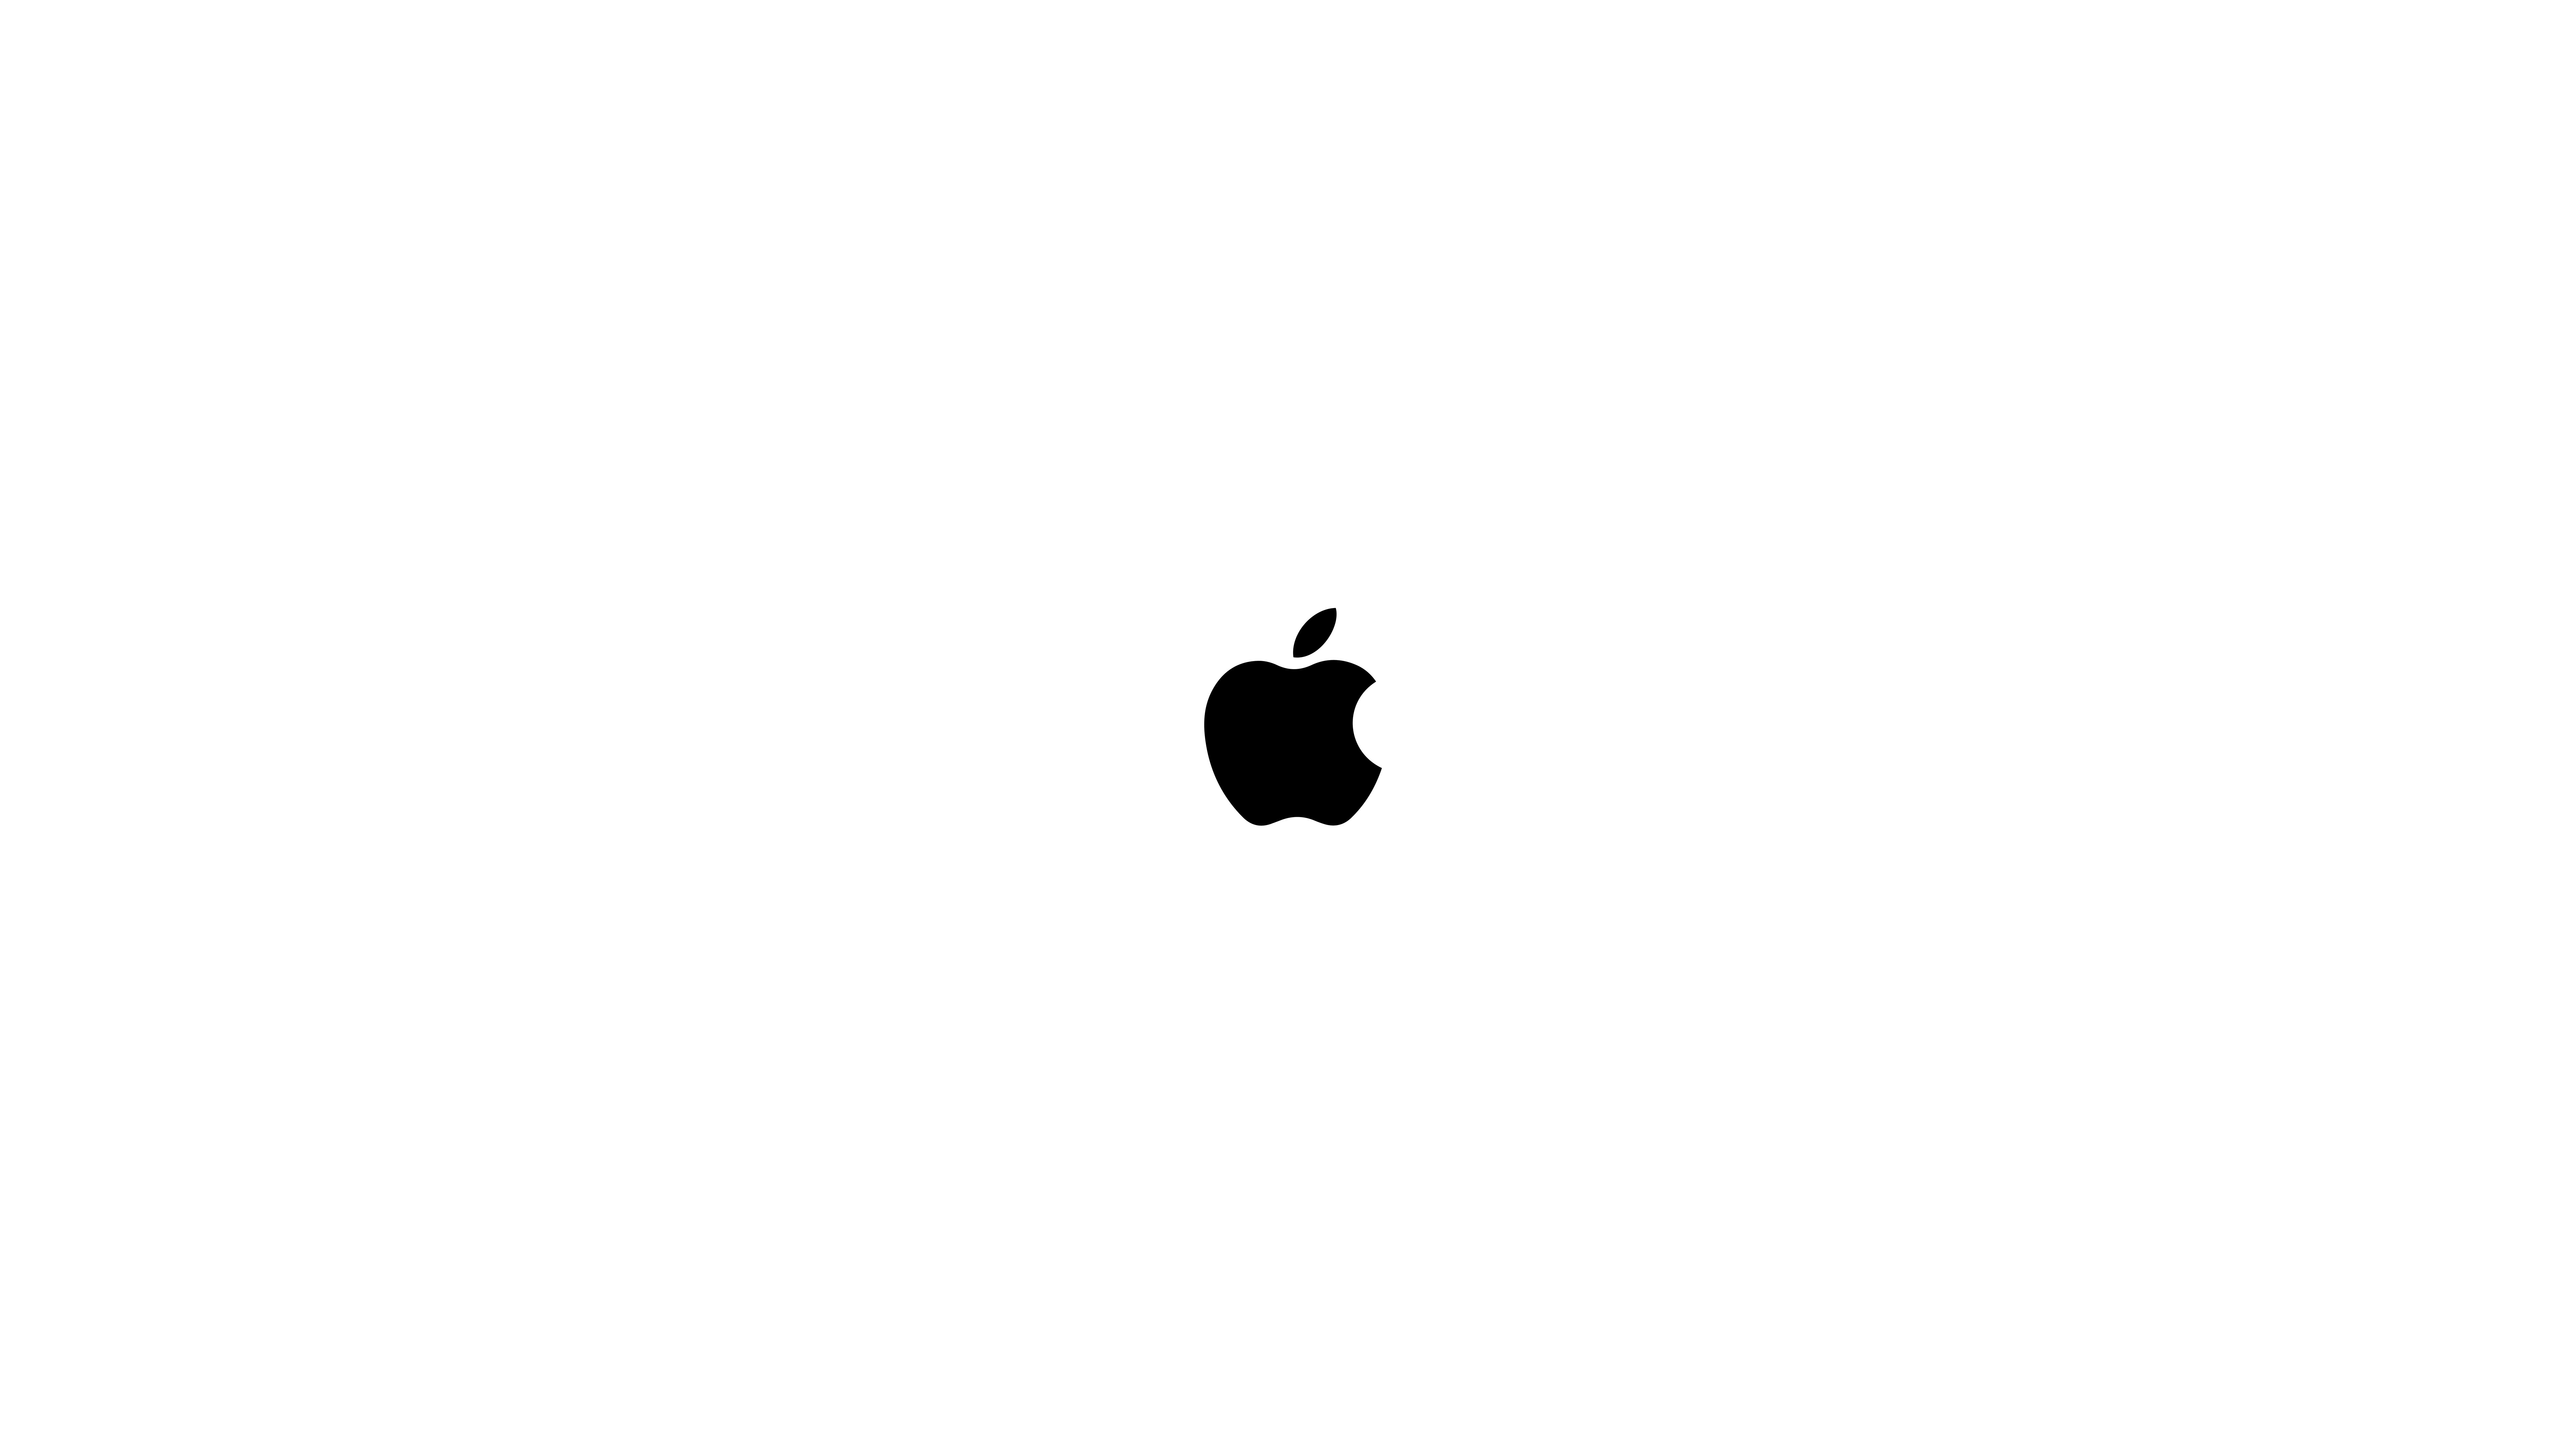 White On Black Background Apple Logo - Black Apple Logo UHD 8K Wallpaper